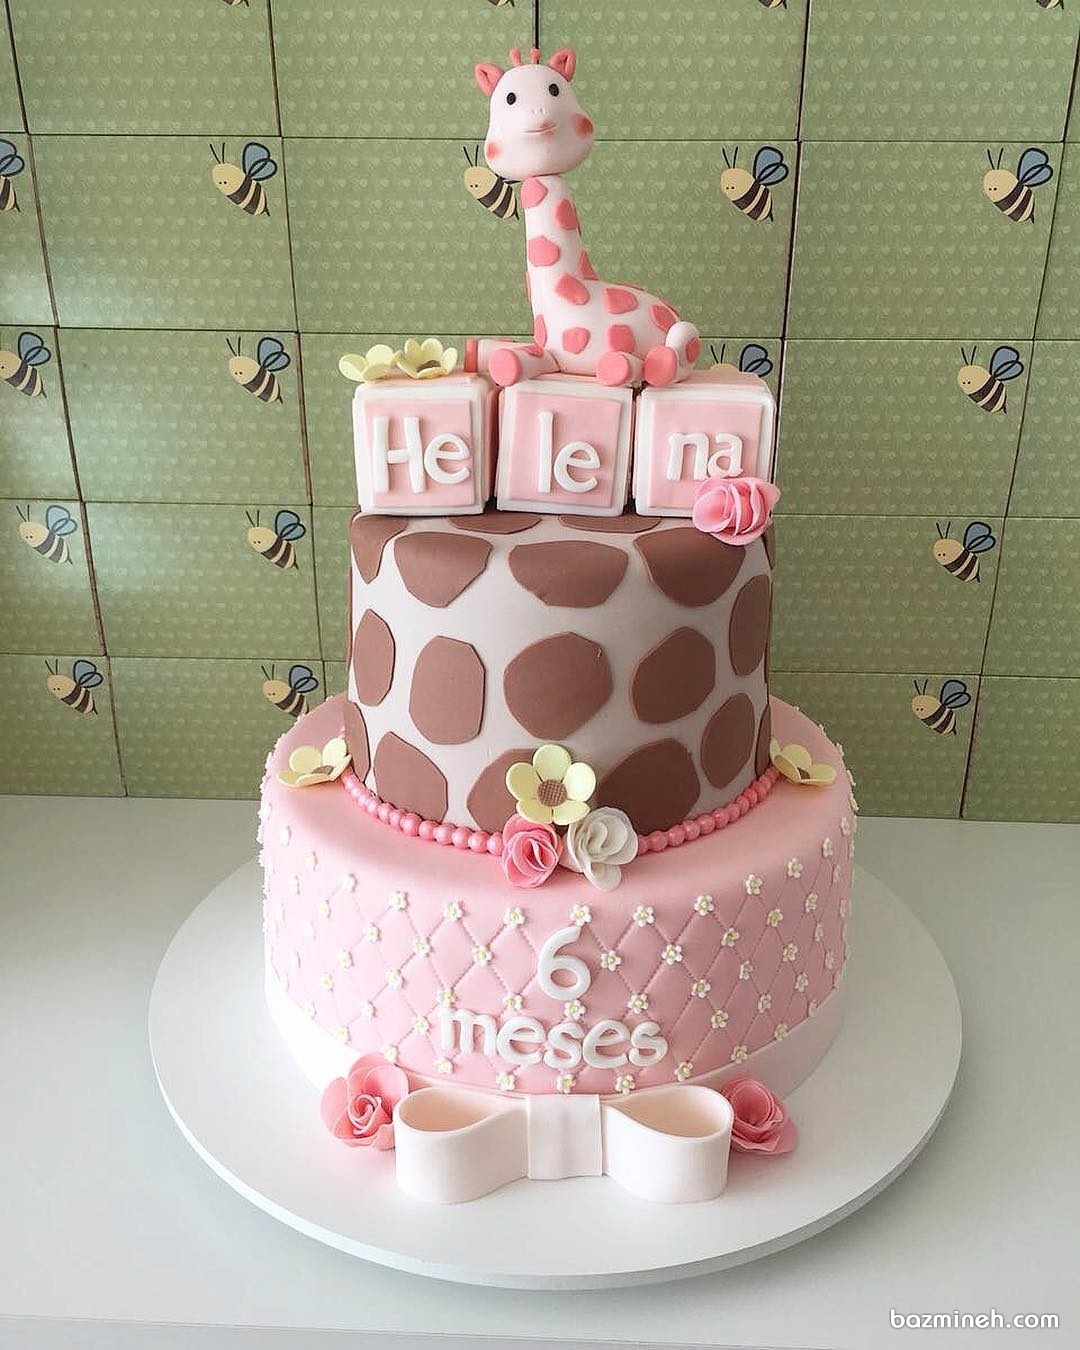 کیک زیبای جشن تولد دخترانه با تم زرافه ی صورتی (Pink Giraffe)